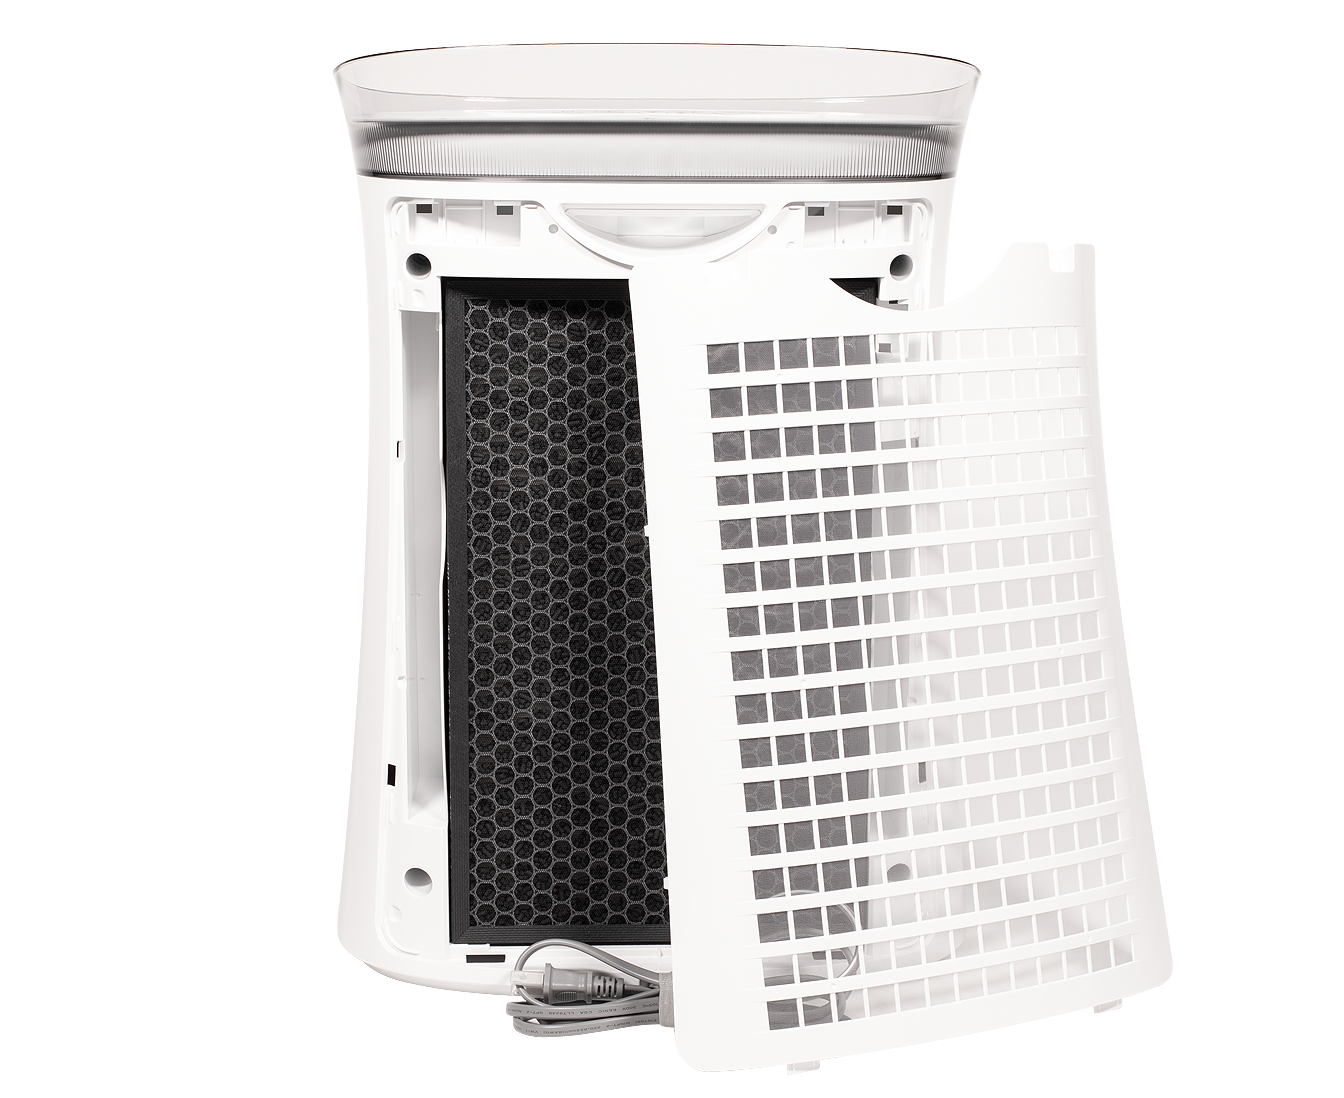 FPK50UW air purifier filter